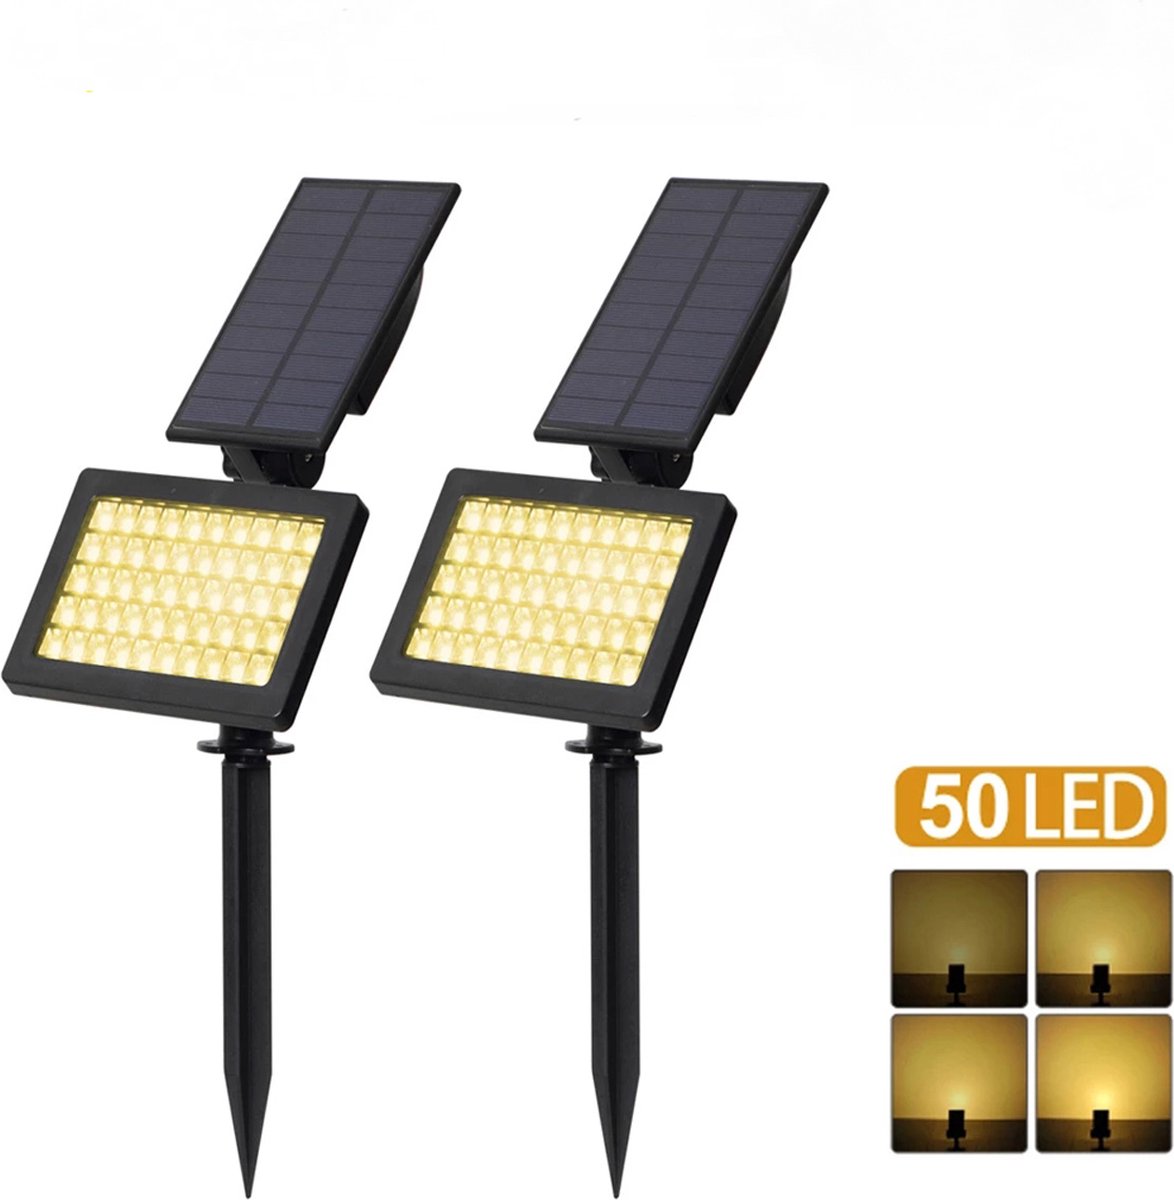 Solar Spotlights - 50 LED - Buiten Landschap Wandlamp - Waterdicht IP44 - Warm Wit - Tuin Decoratie Verlichting - 2st